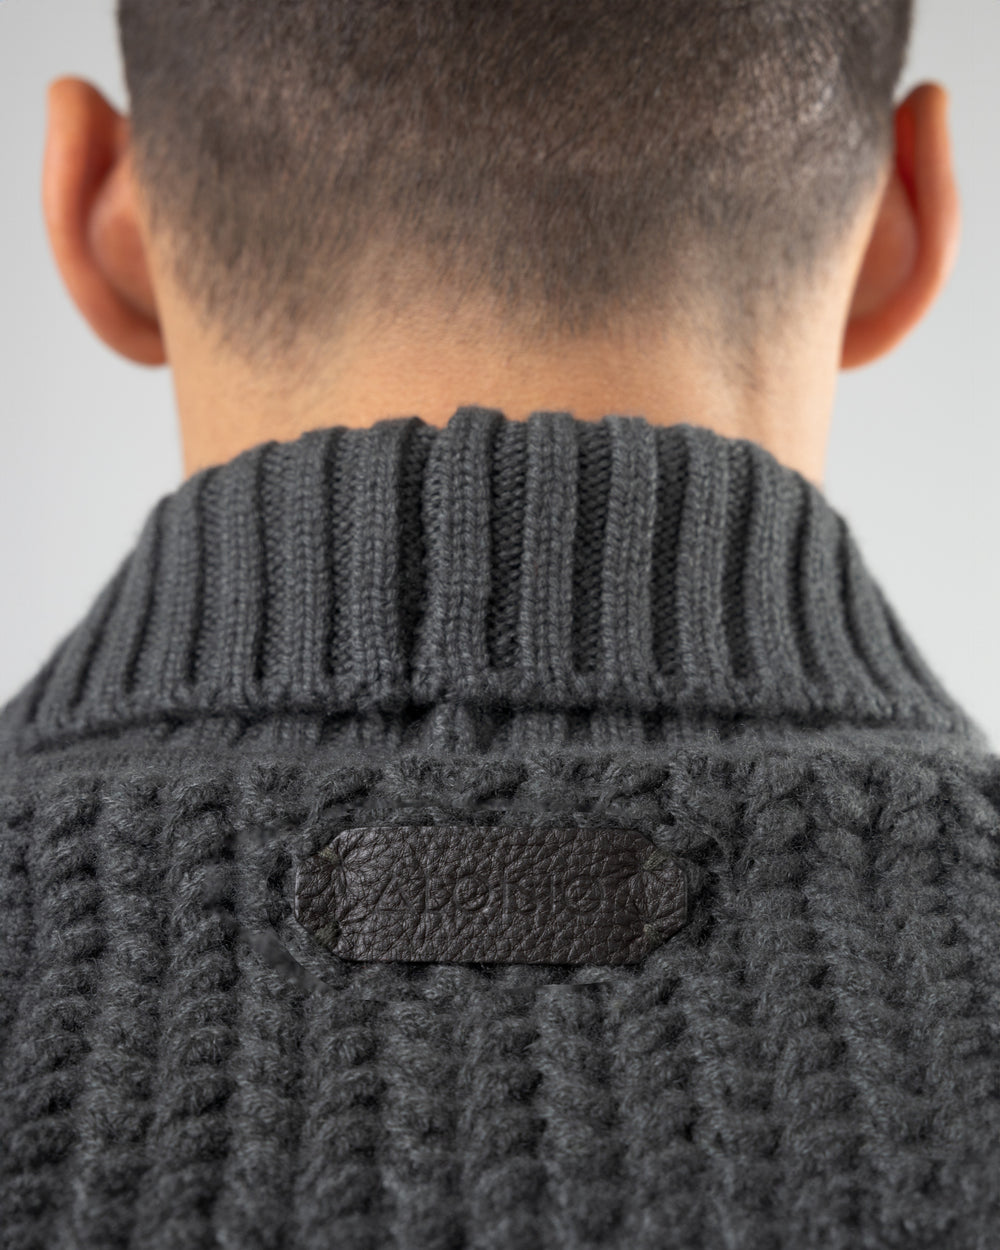 Taiga Shawl Collar V-neck Pullover in Cashmere, Drill Grey